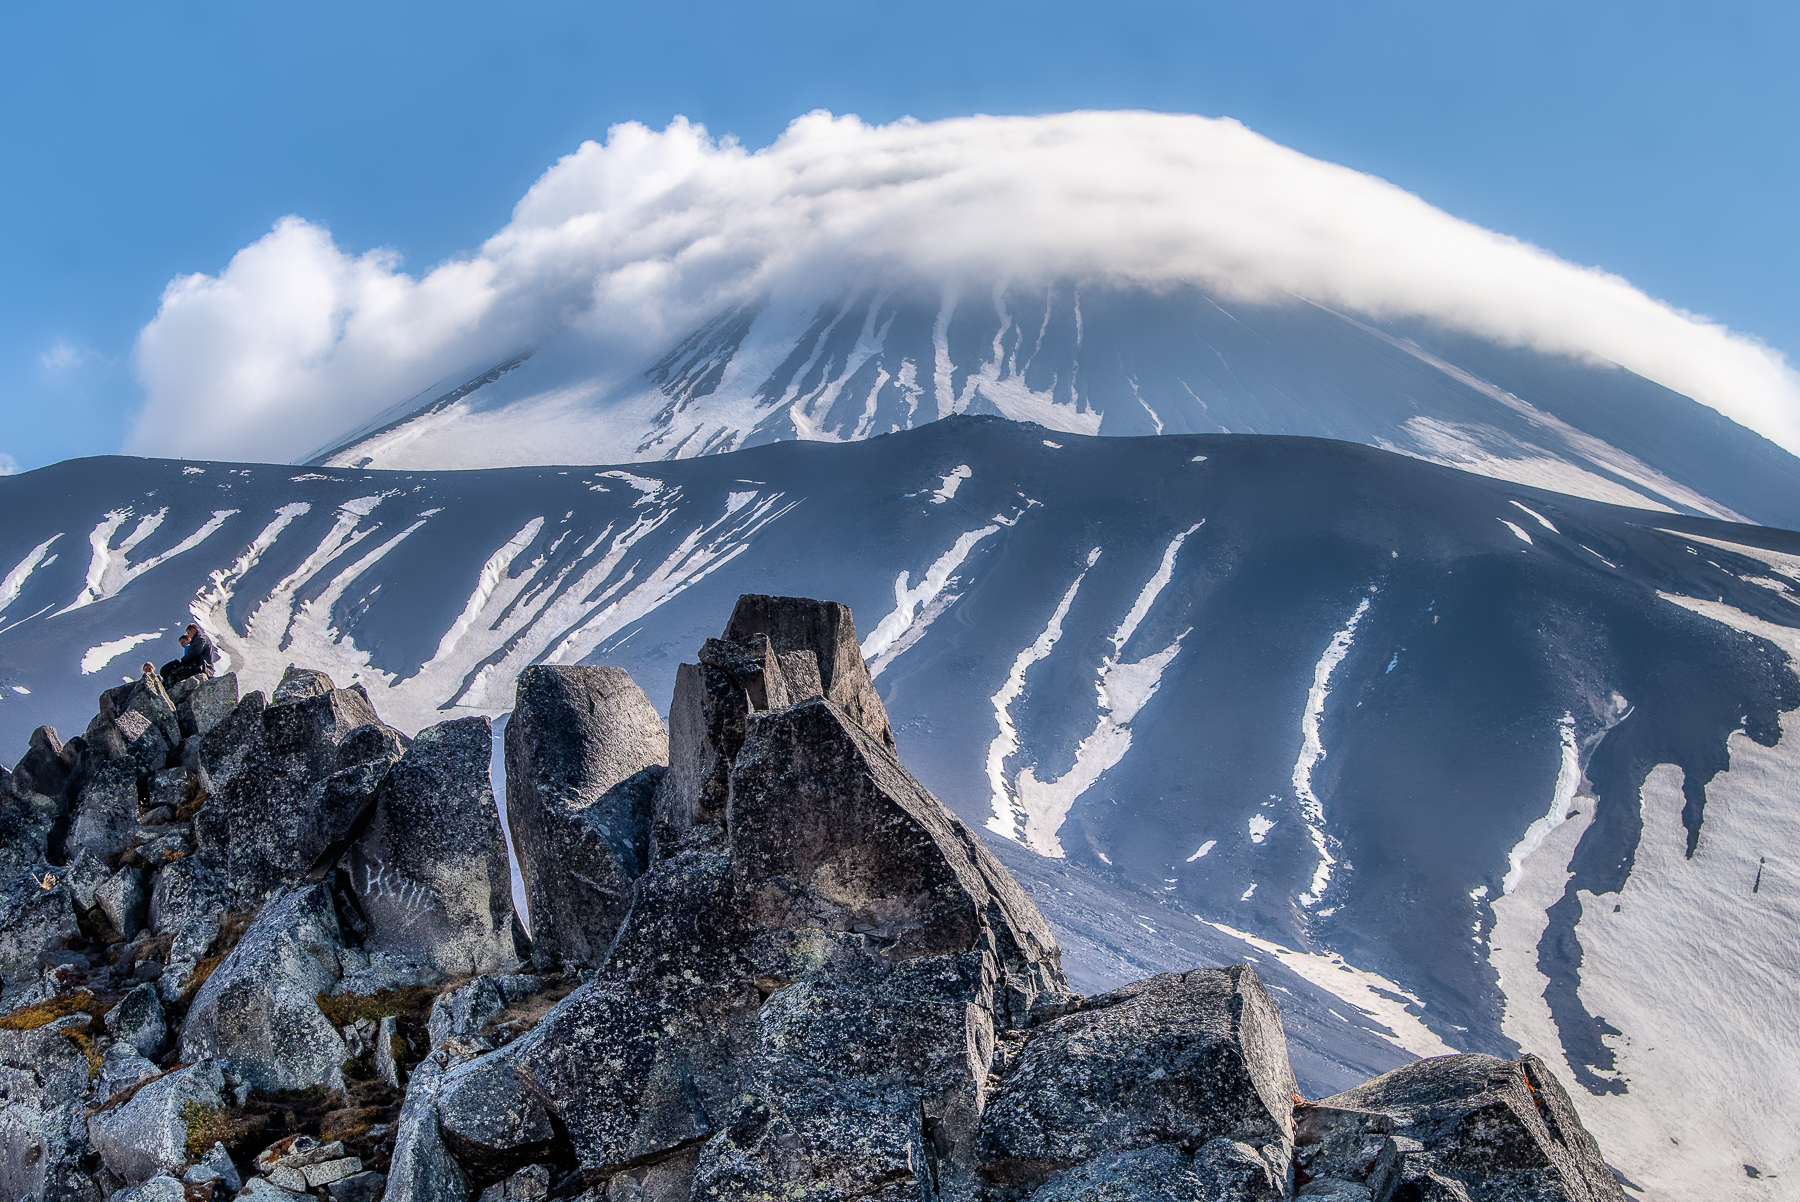 Kamchatka landscape by Katti Borre